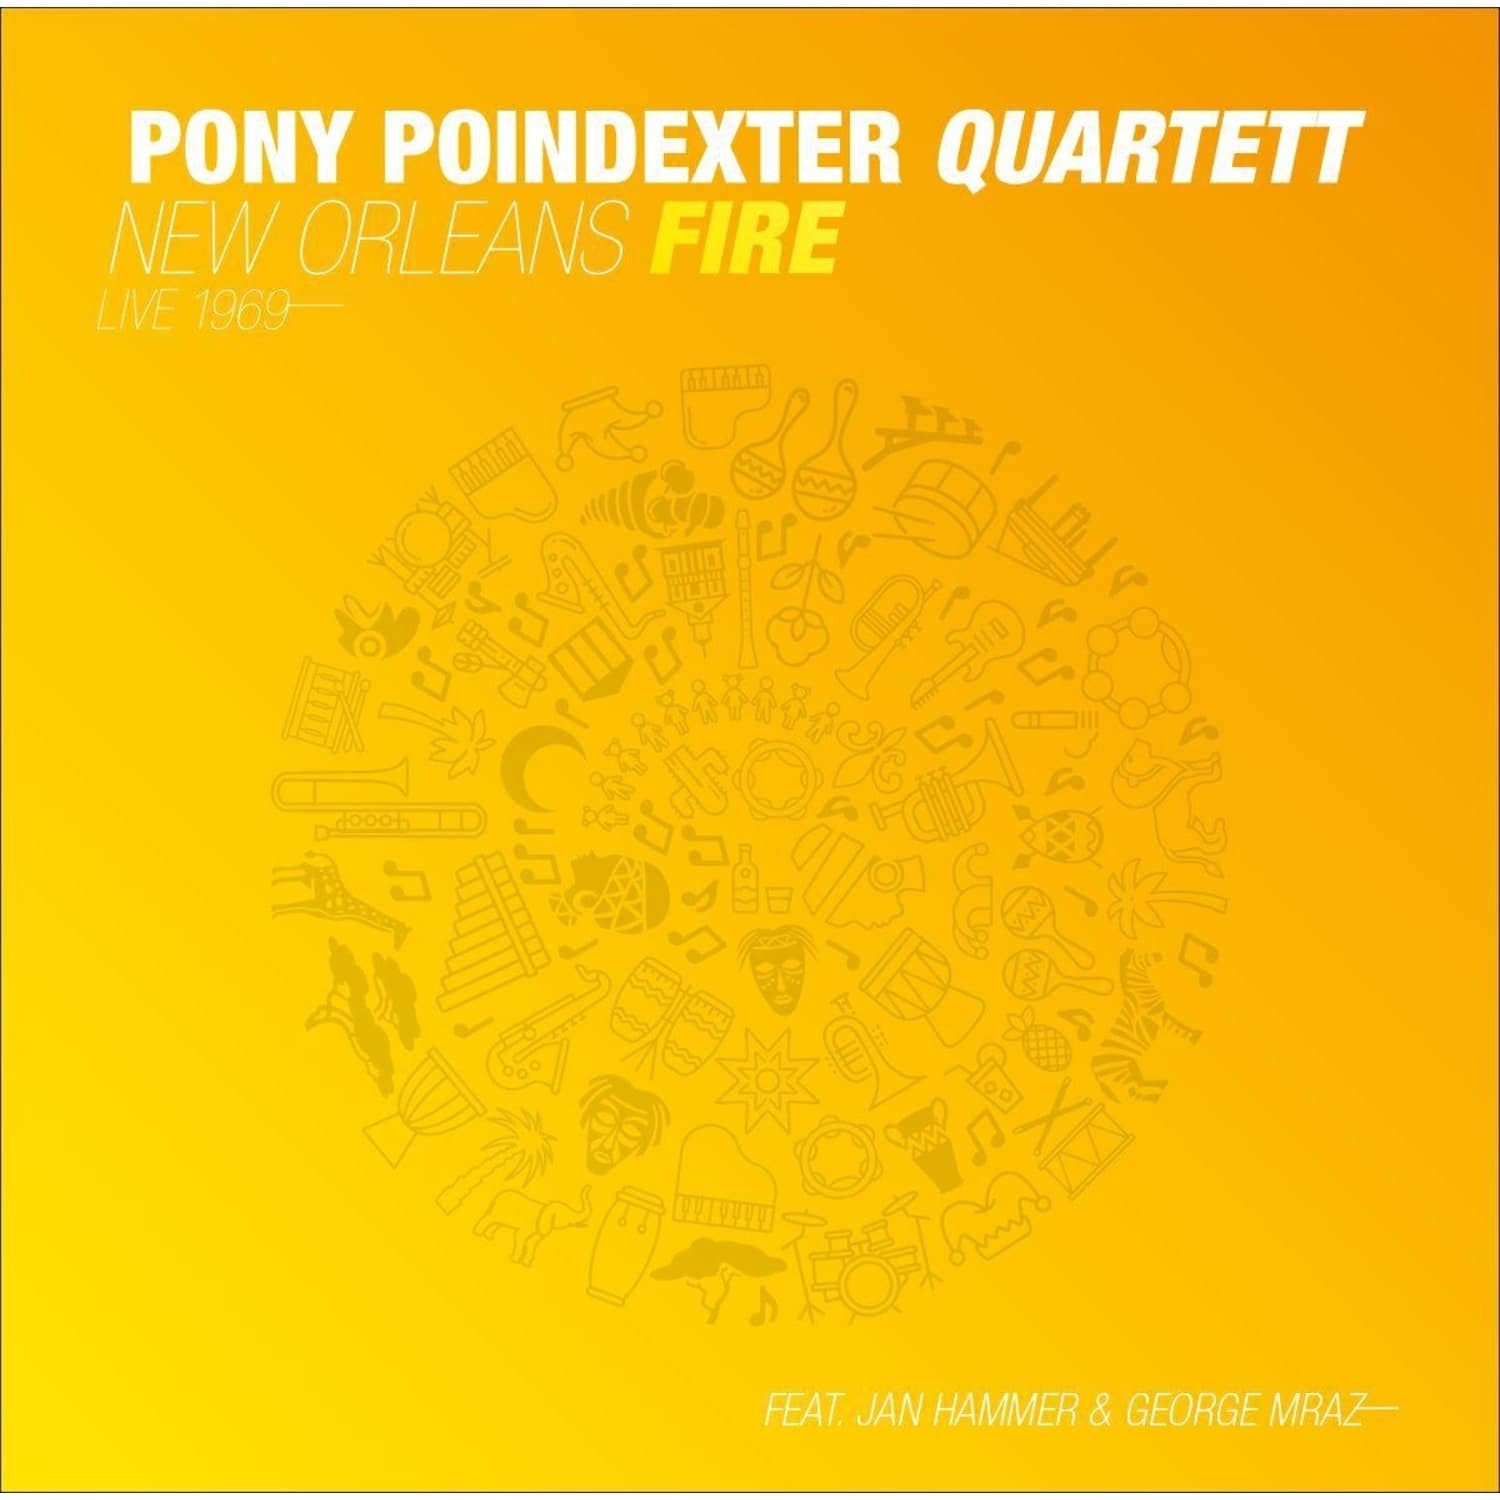 Pony Poindexter Quartett ft. Jan Hammer & Georg Mraz - NEW ORLEANS FIRE 